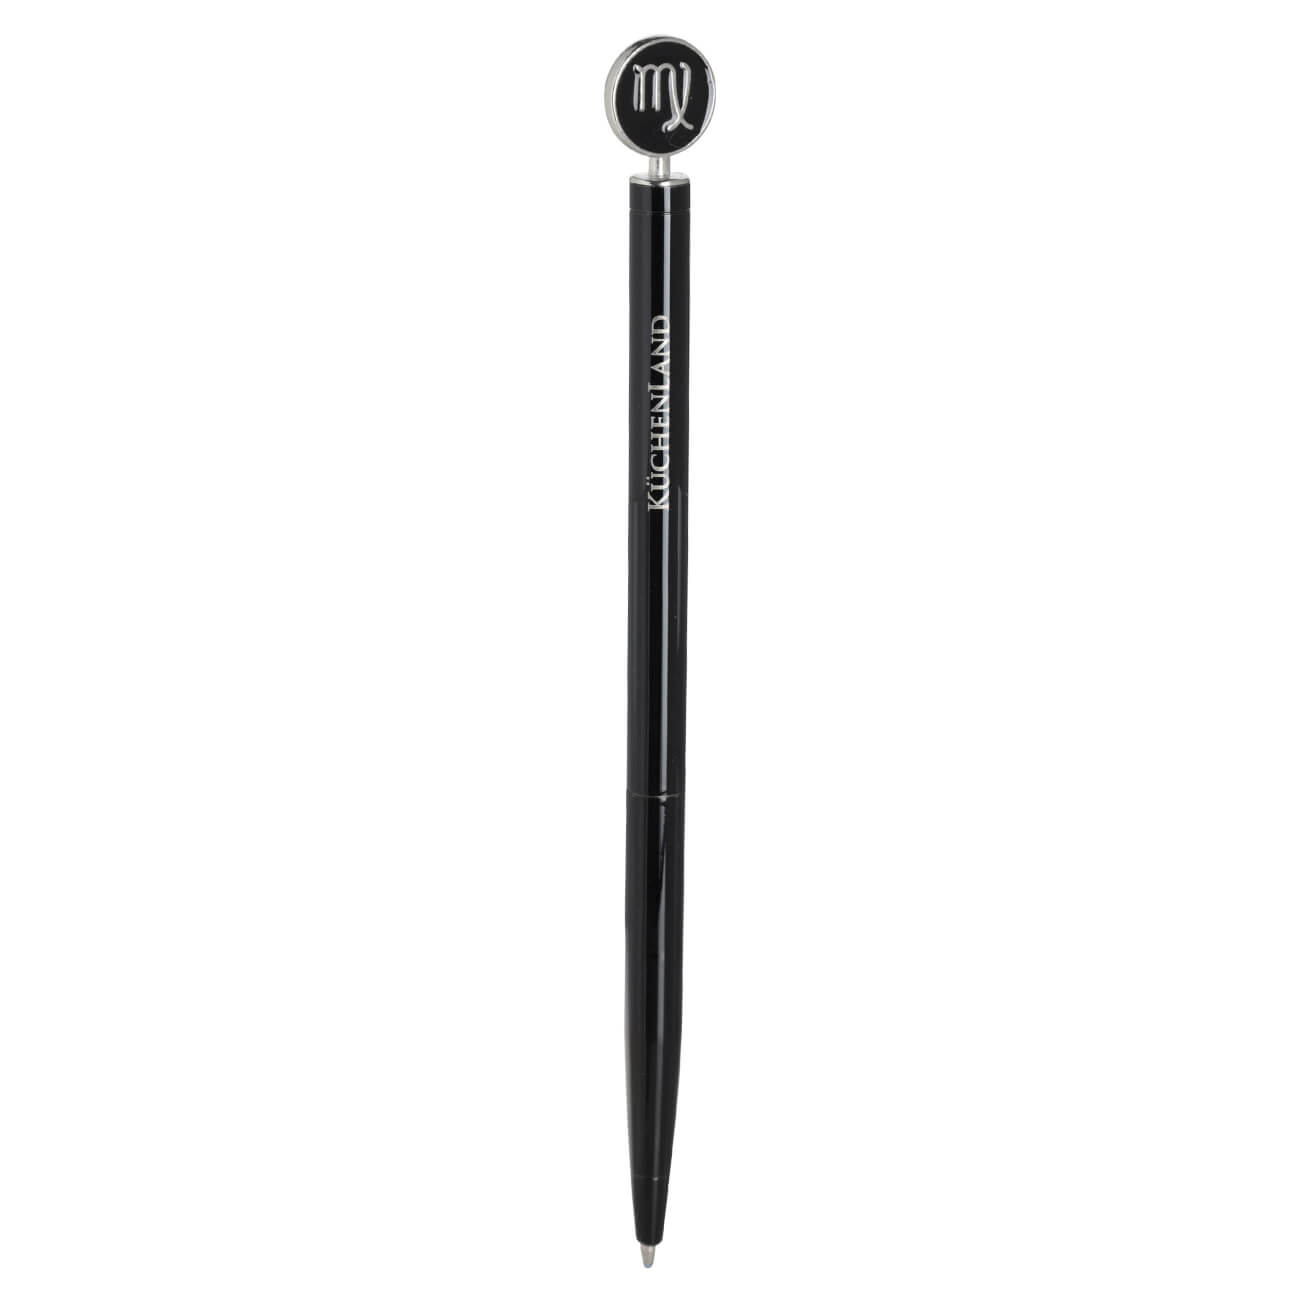 Ручка шариковая, 15 см, с фигуркой, сталь, черно-серебристая, Дева, Zodiac brass ballpoint ручка